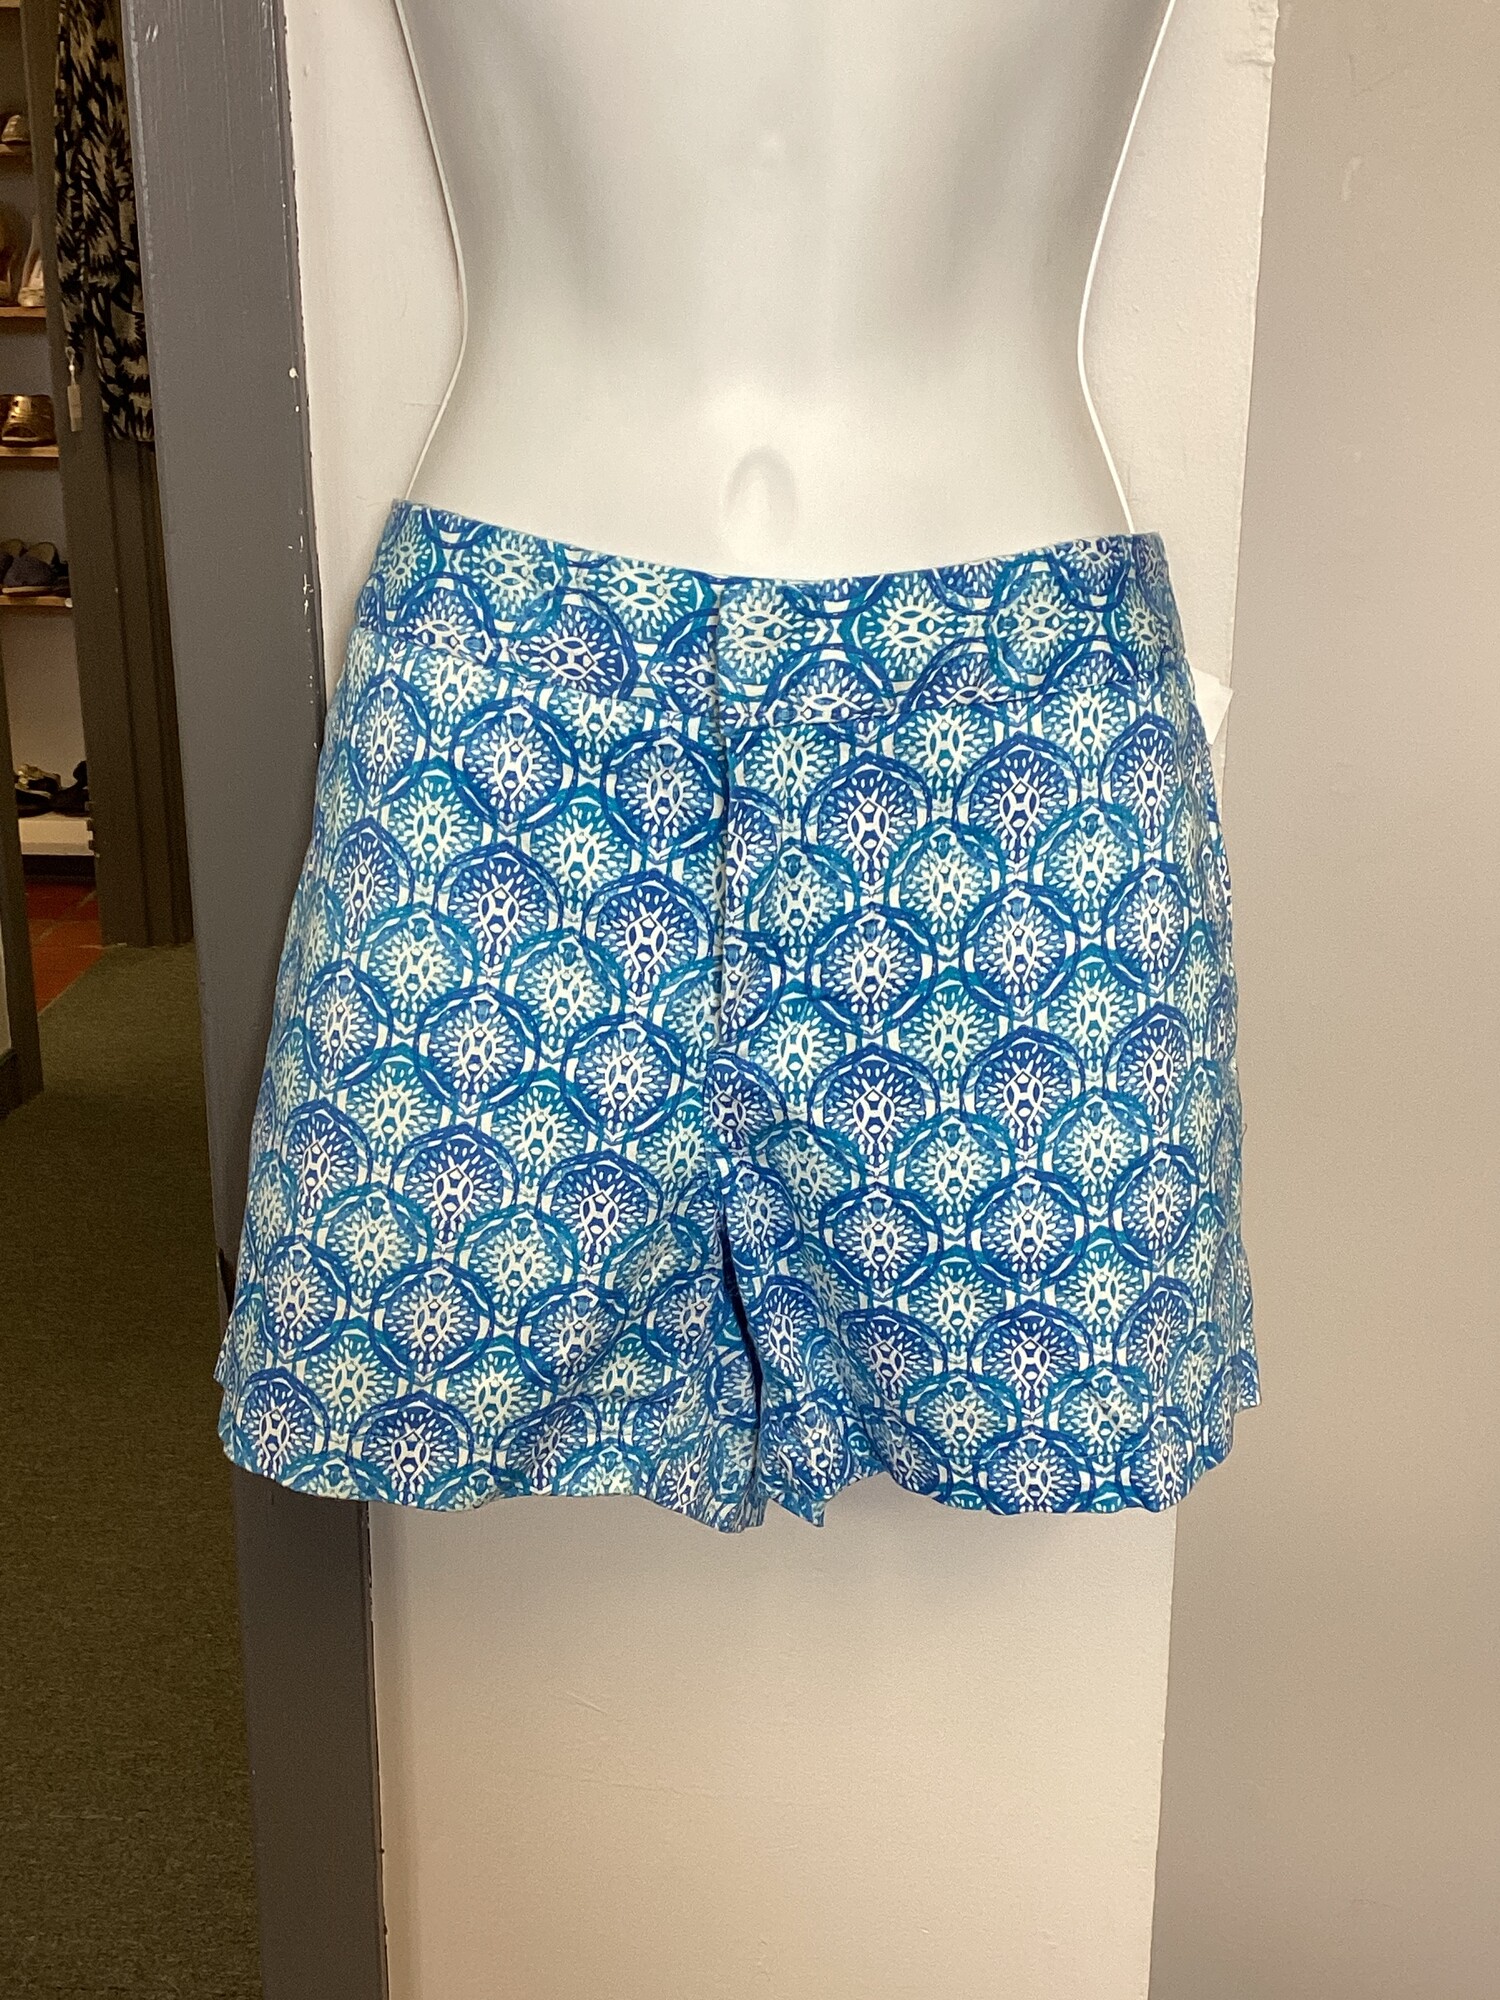 Print Shorts, Blu/wht, Size: 8 Sm